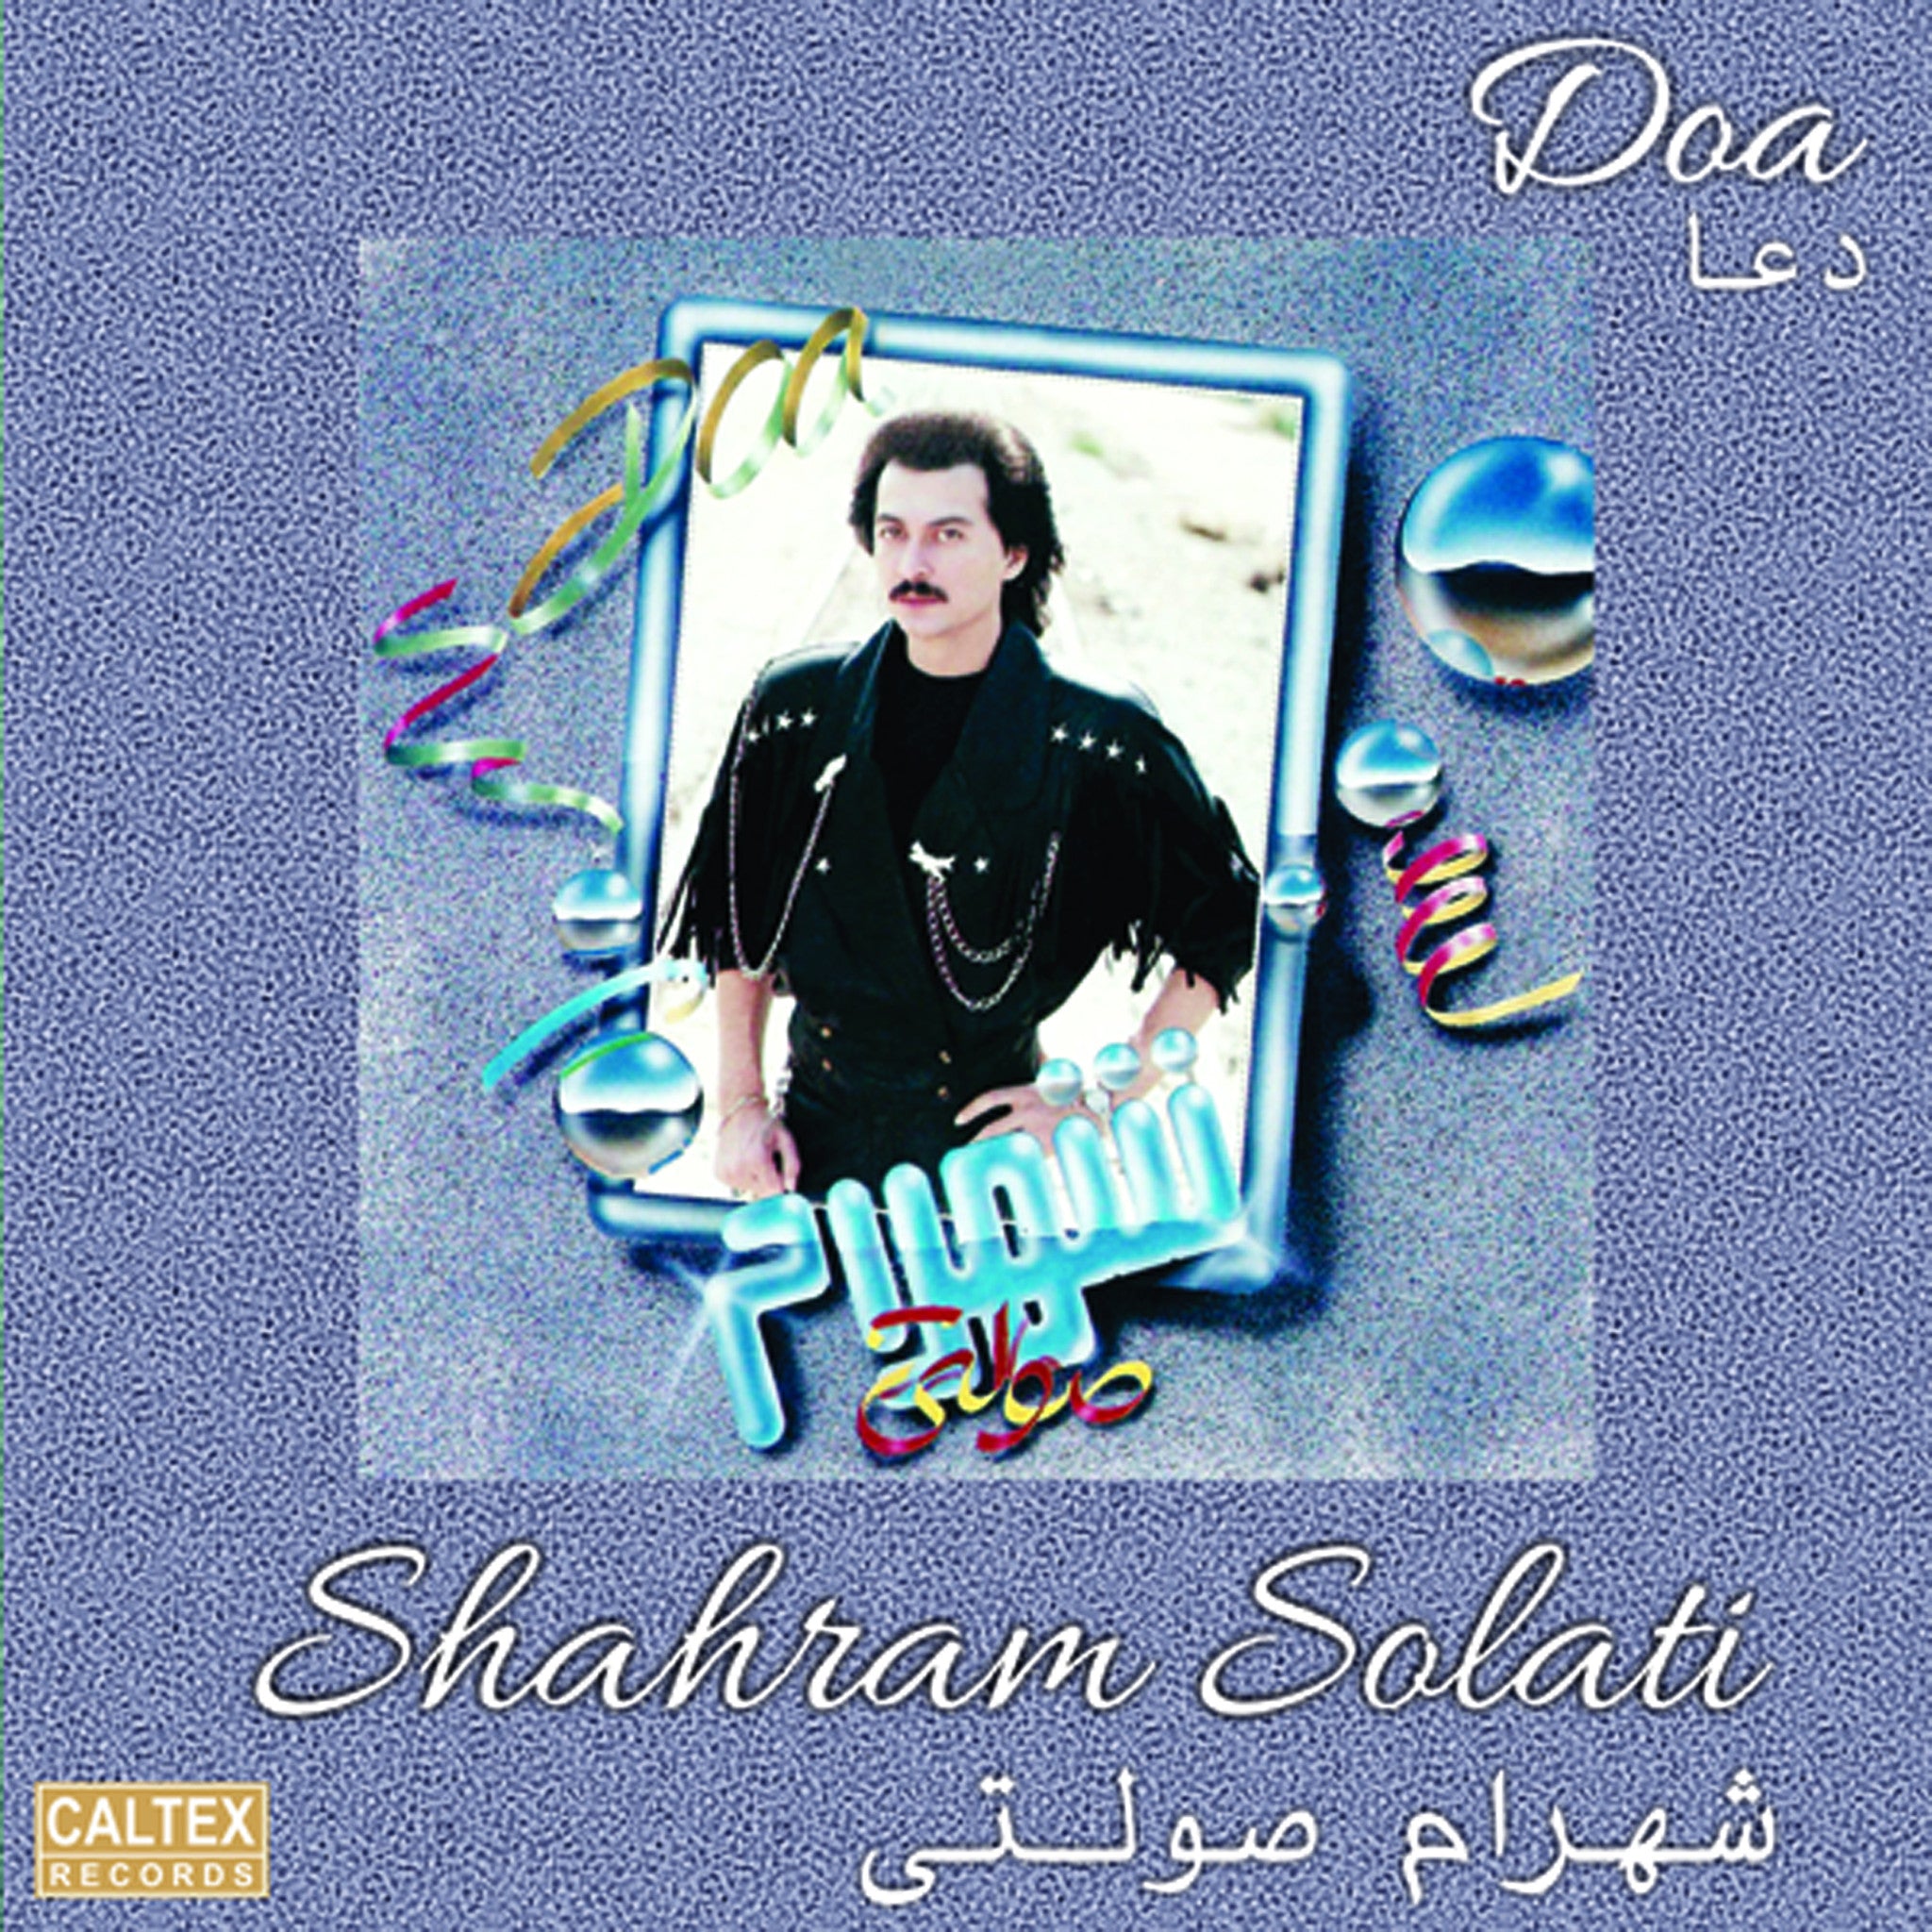 Shahram Solati - Doa (Vinyl)